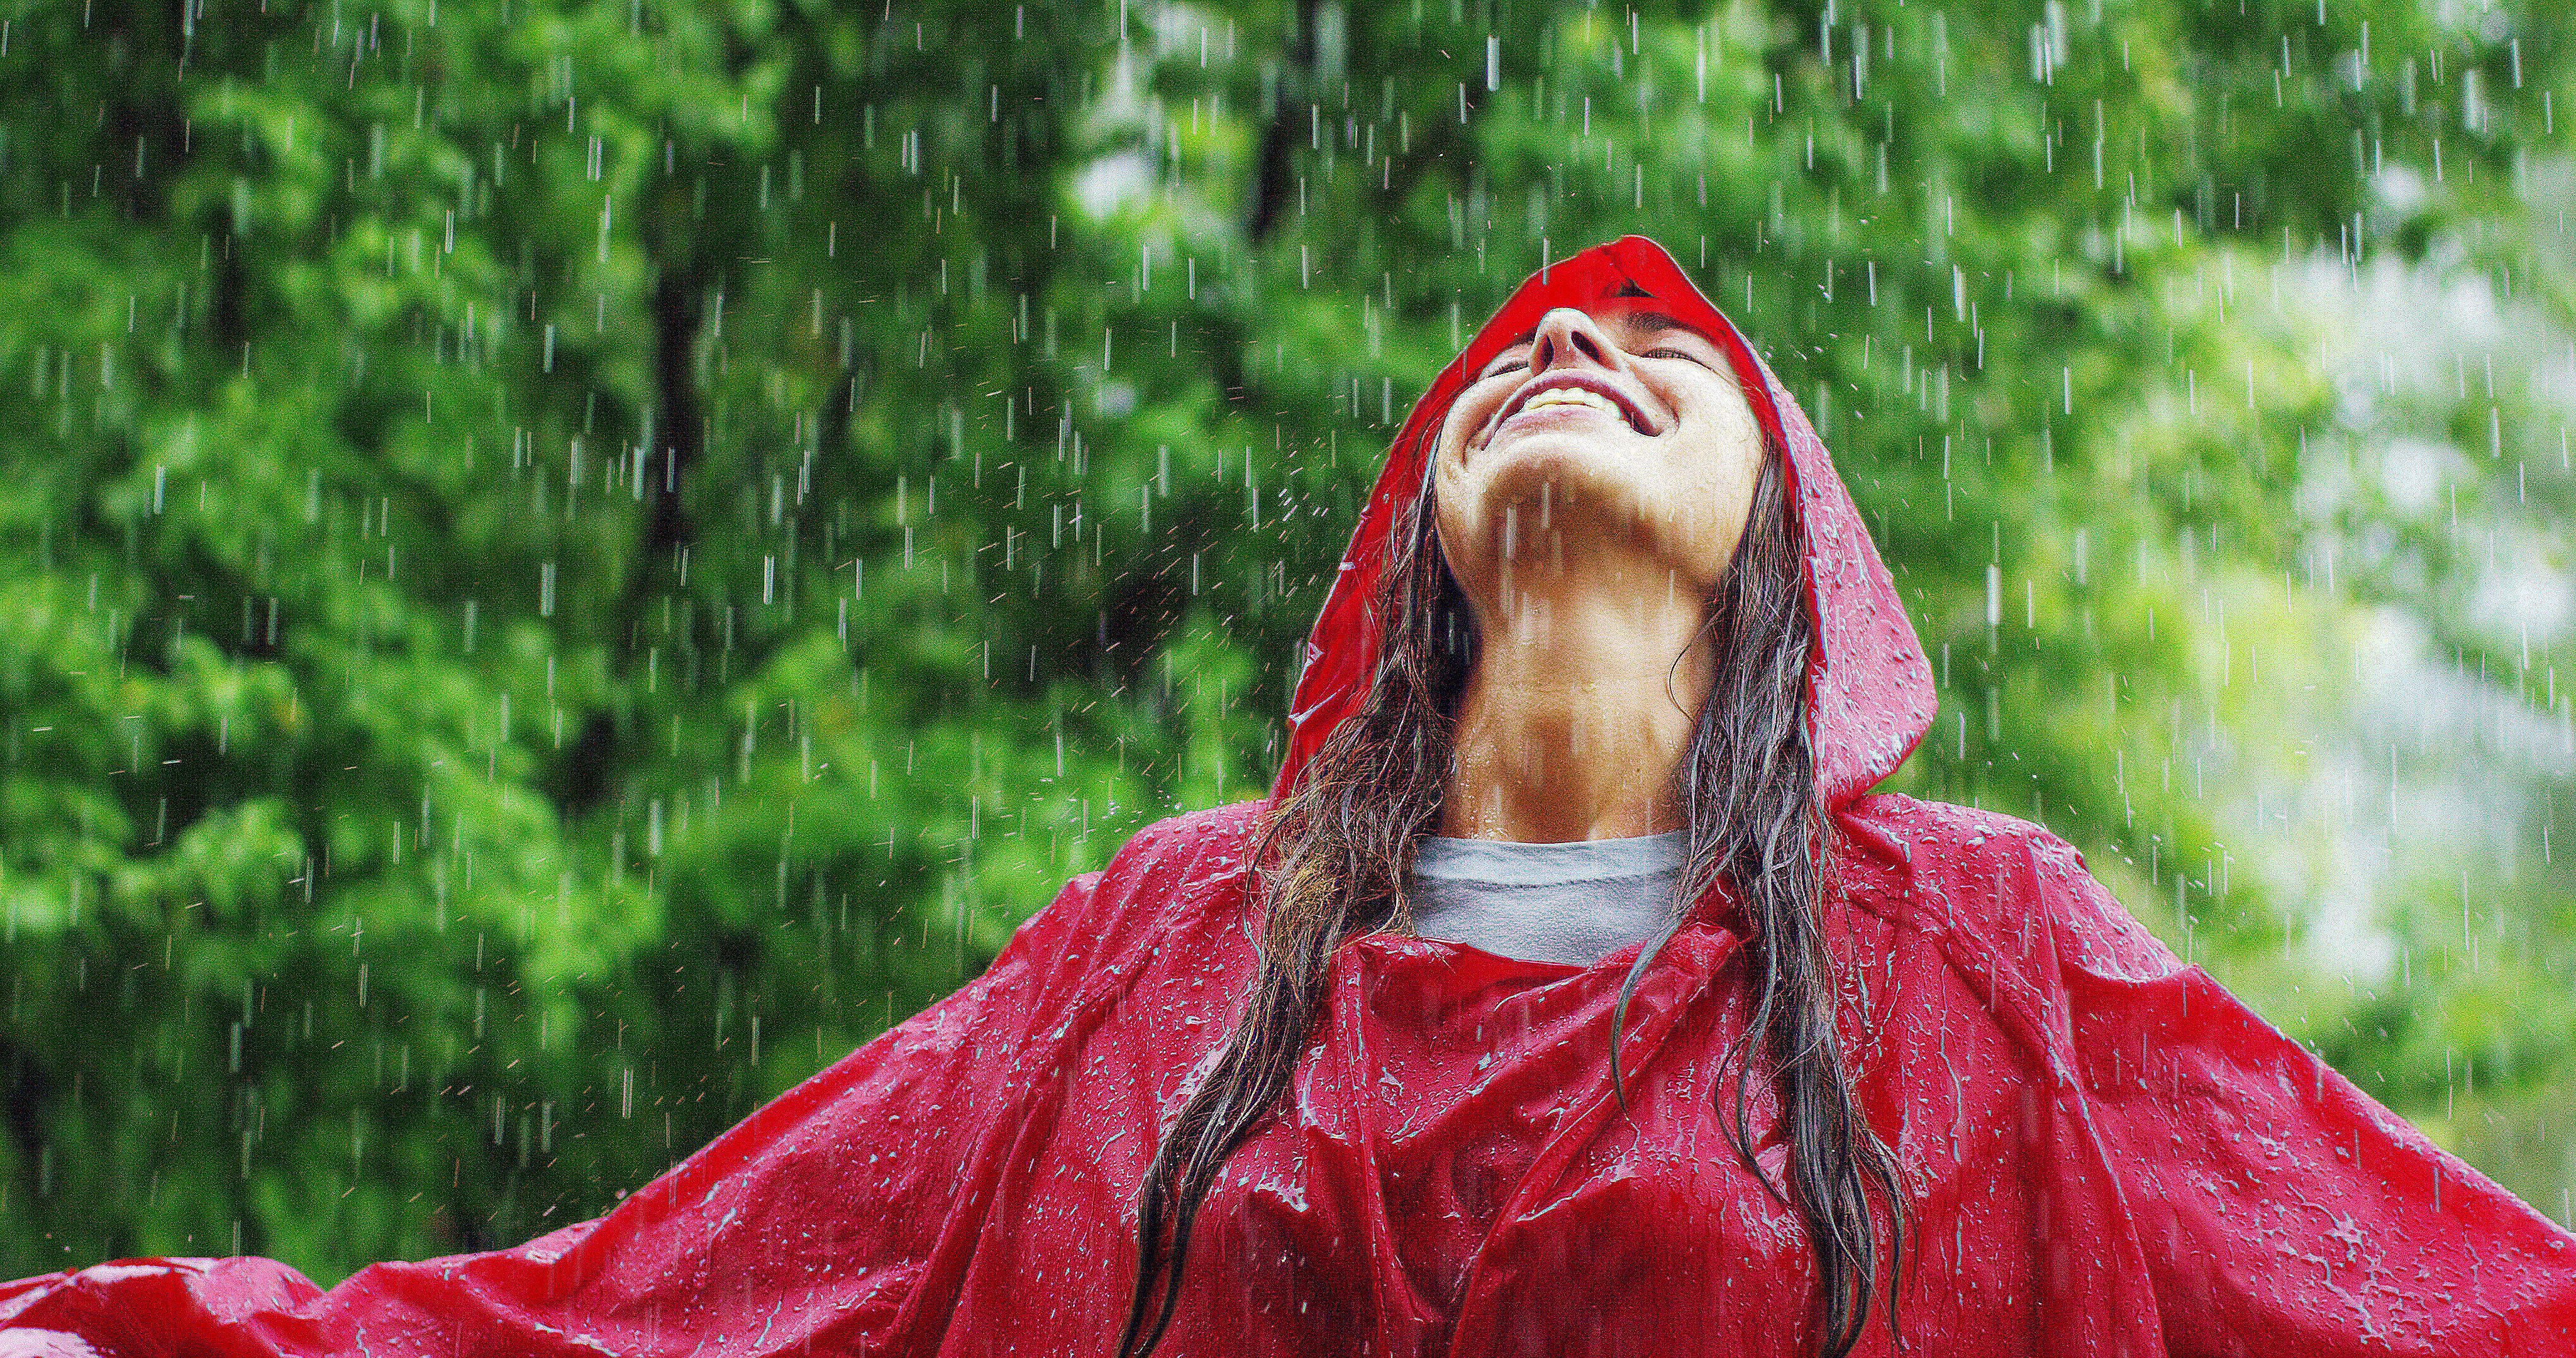 Frau lächelt, dreht sich und lacht im Regen. | Quelle: Shutterstock